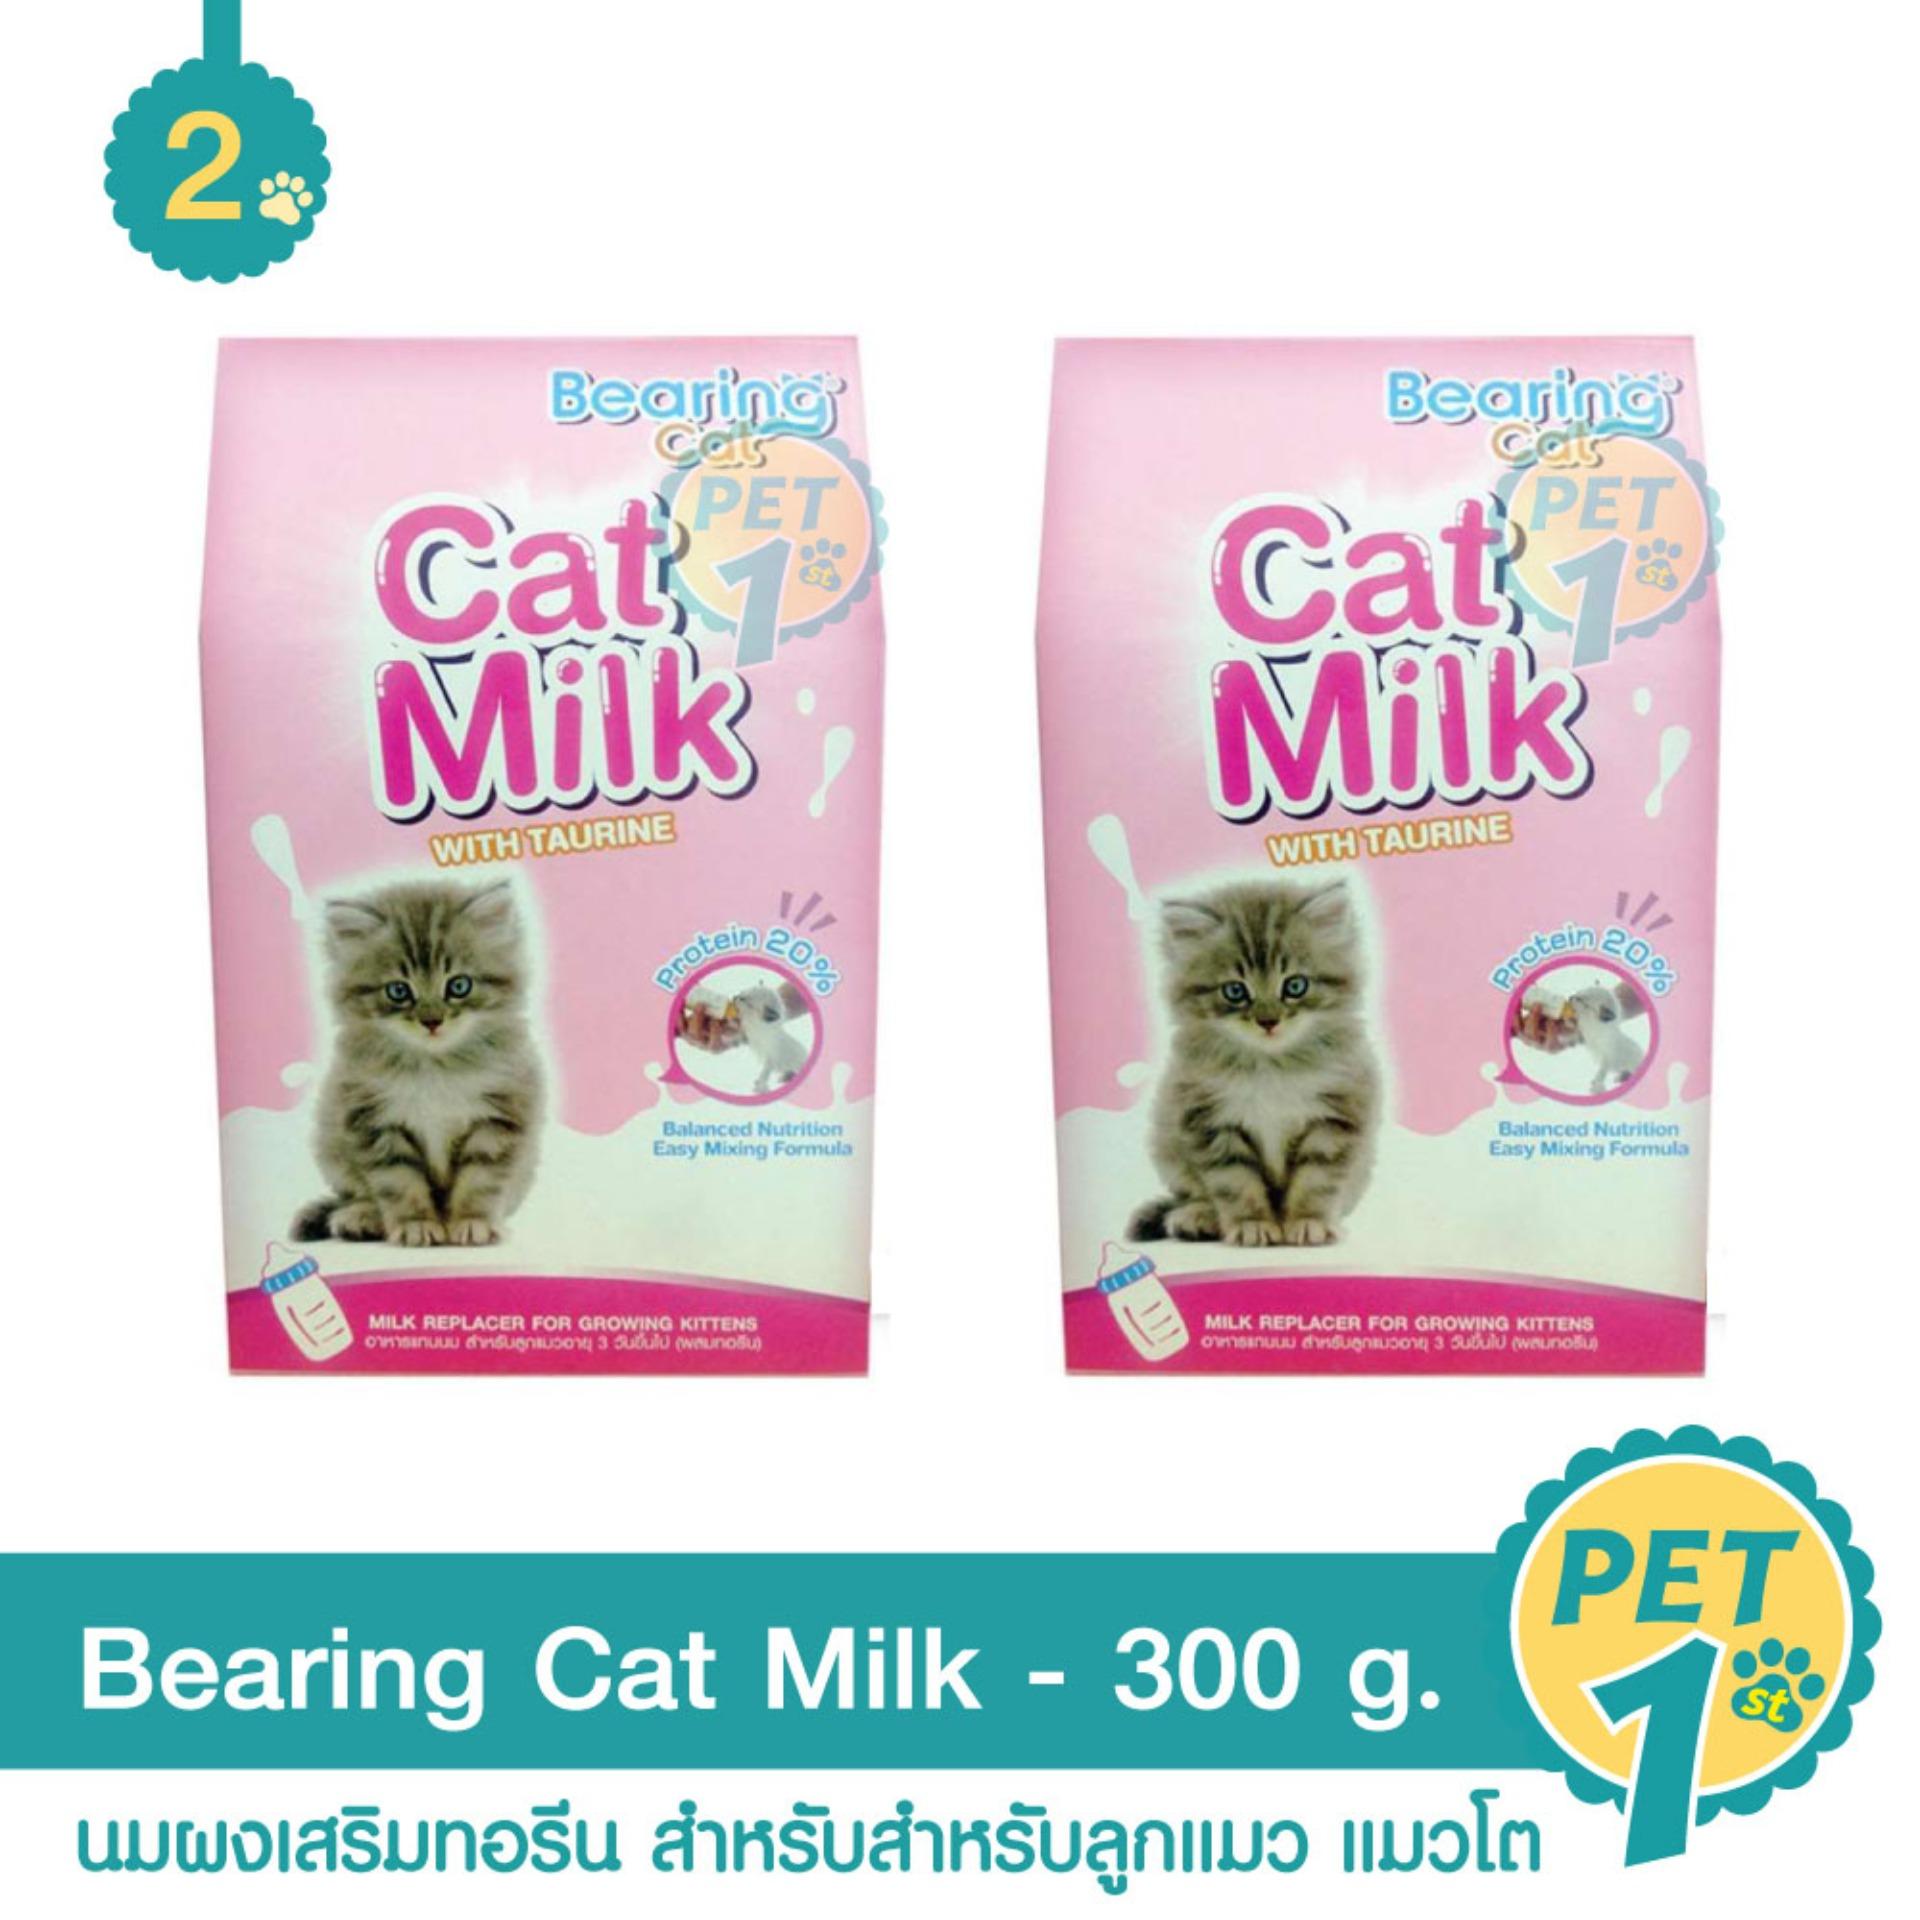 Bearing Cat Milk นมผงเสริมทอรีน สำหรับสำหรับลูกแมว แมวโต 300 g. - 2 แพ็ค